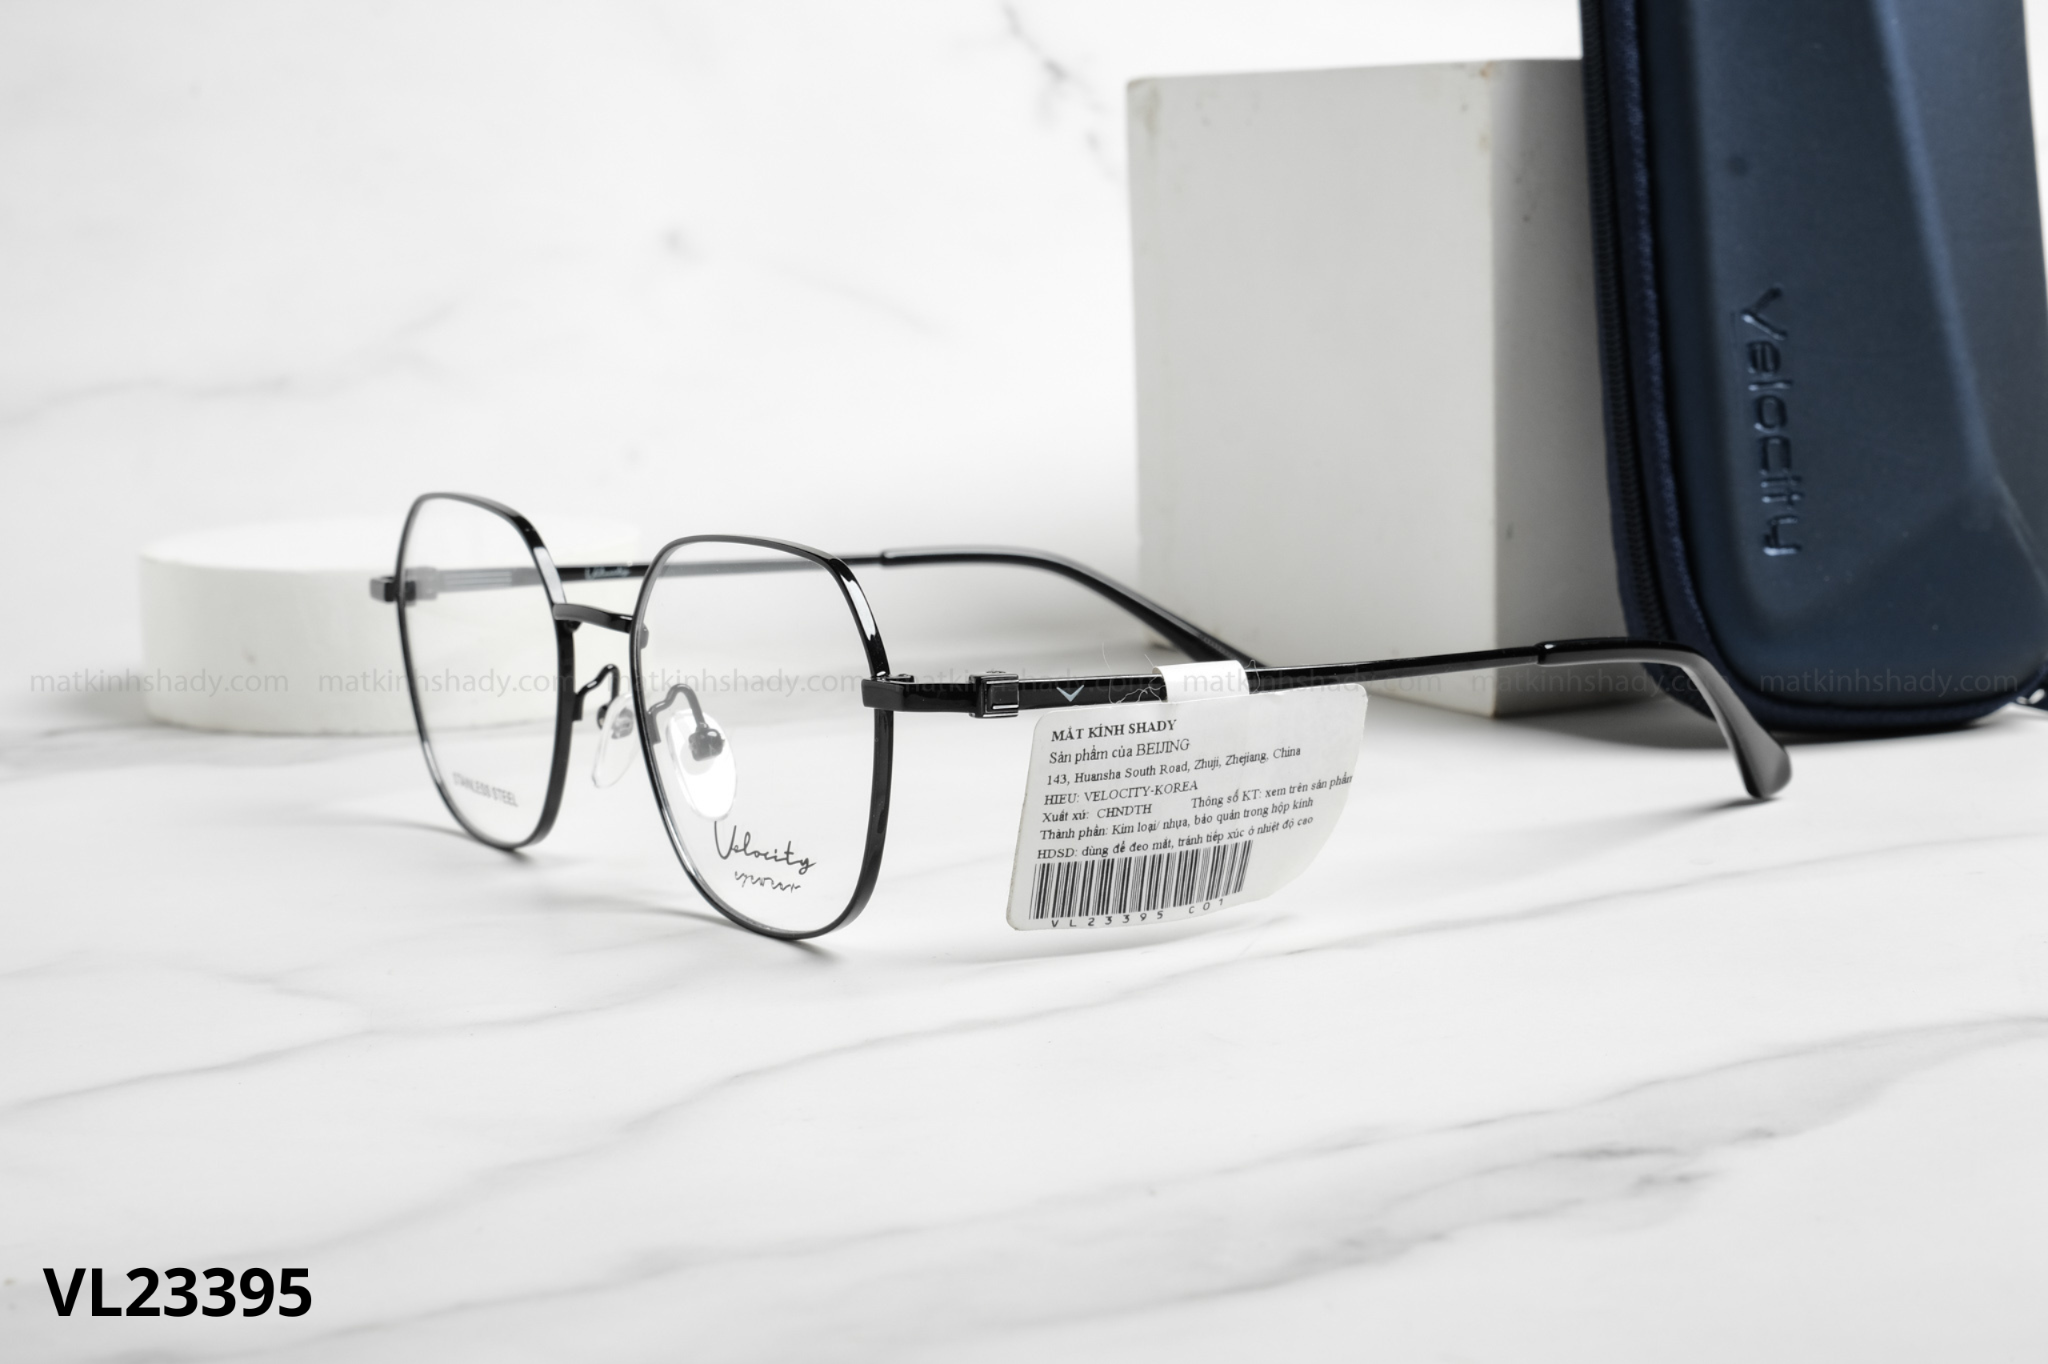  Velocity Eyewear - Glasses - VL23395 